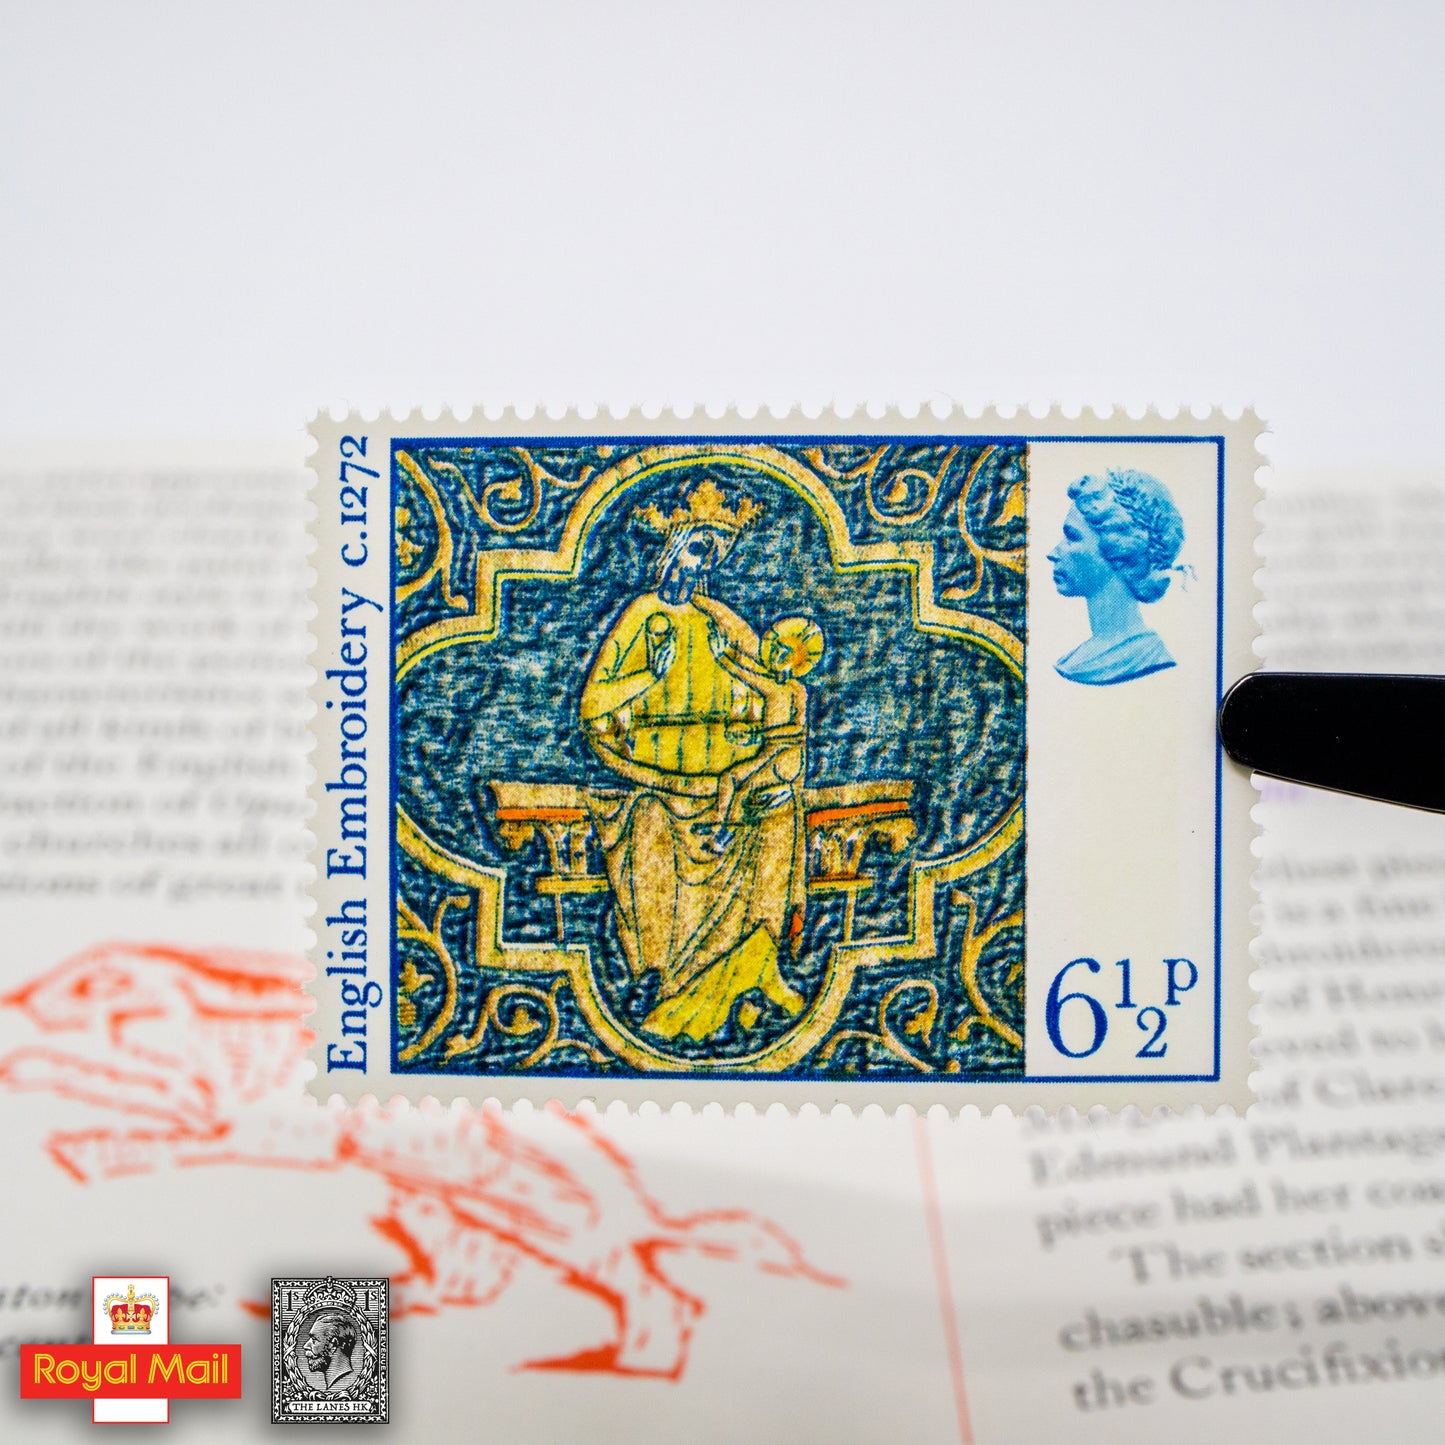 #087: 1976年 聖誕節 紀念郵票展示包